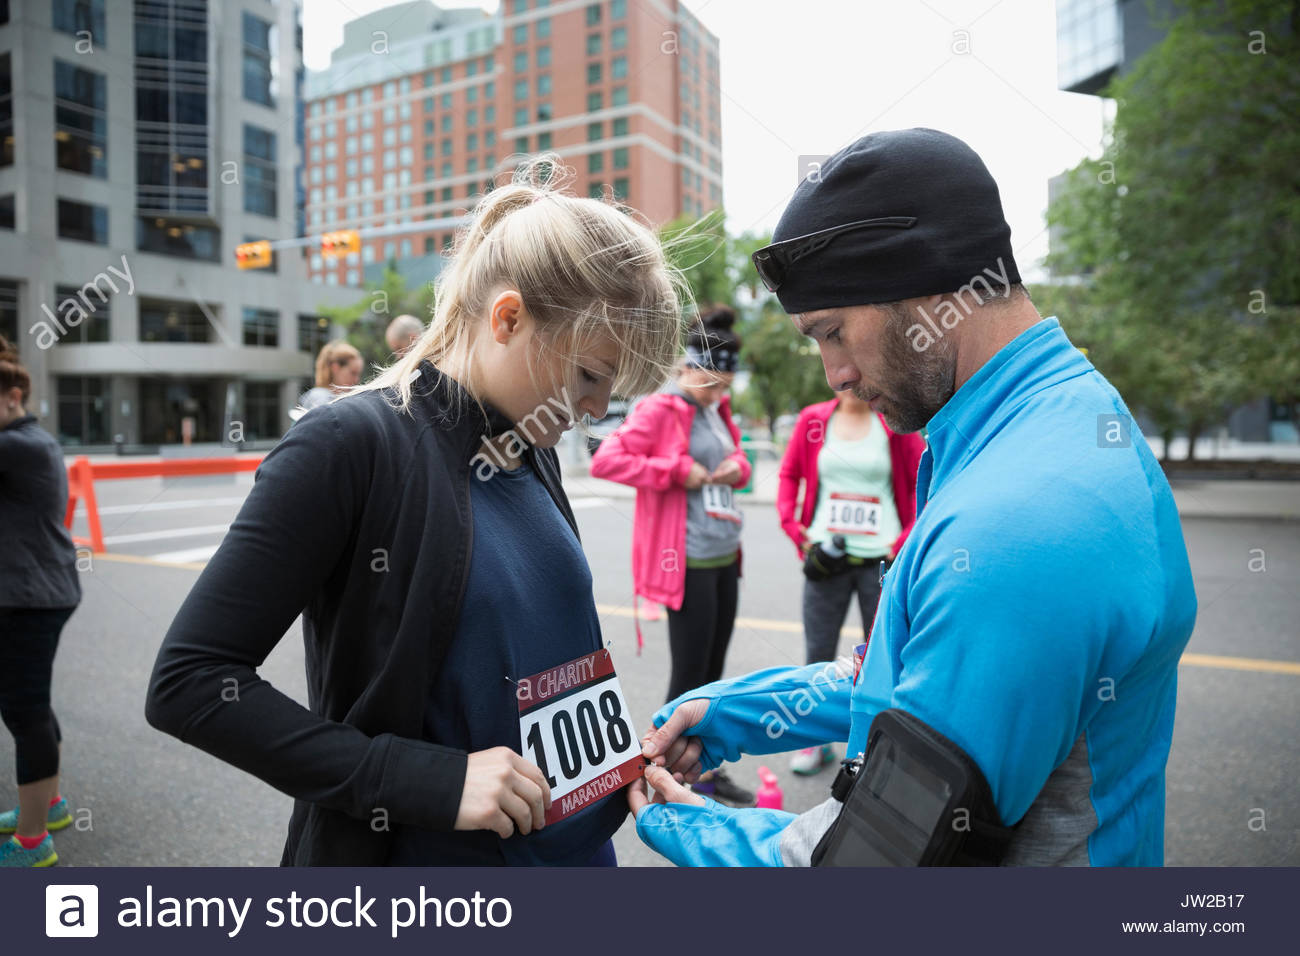 Mann, Frau auf Marathon bib auf Urban Street Stockfoto